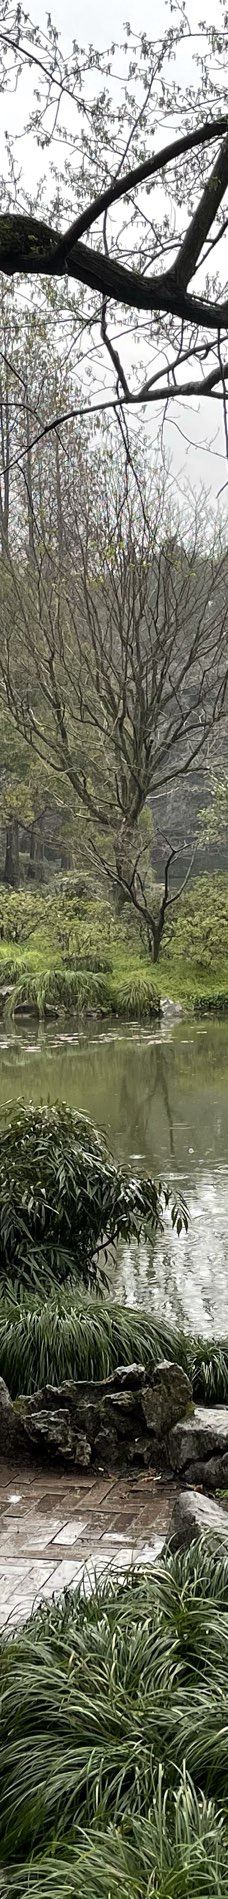 杭州植物园-杭州